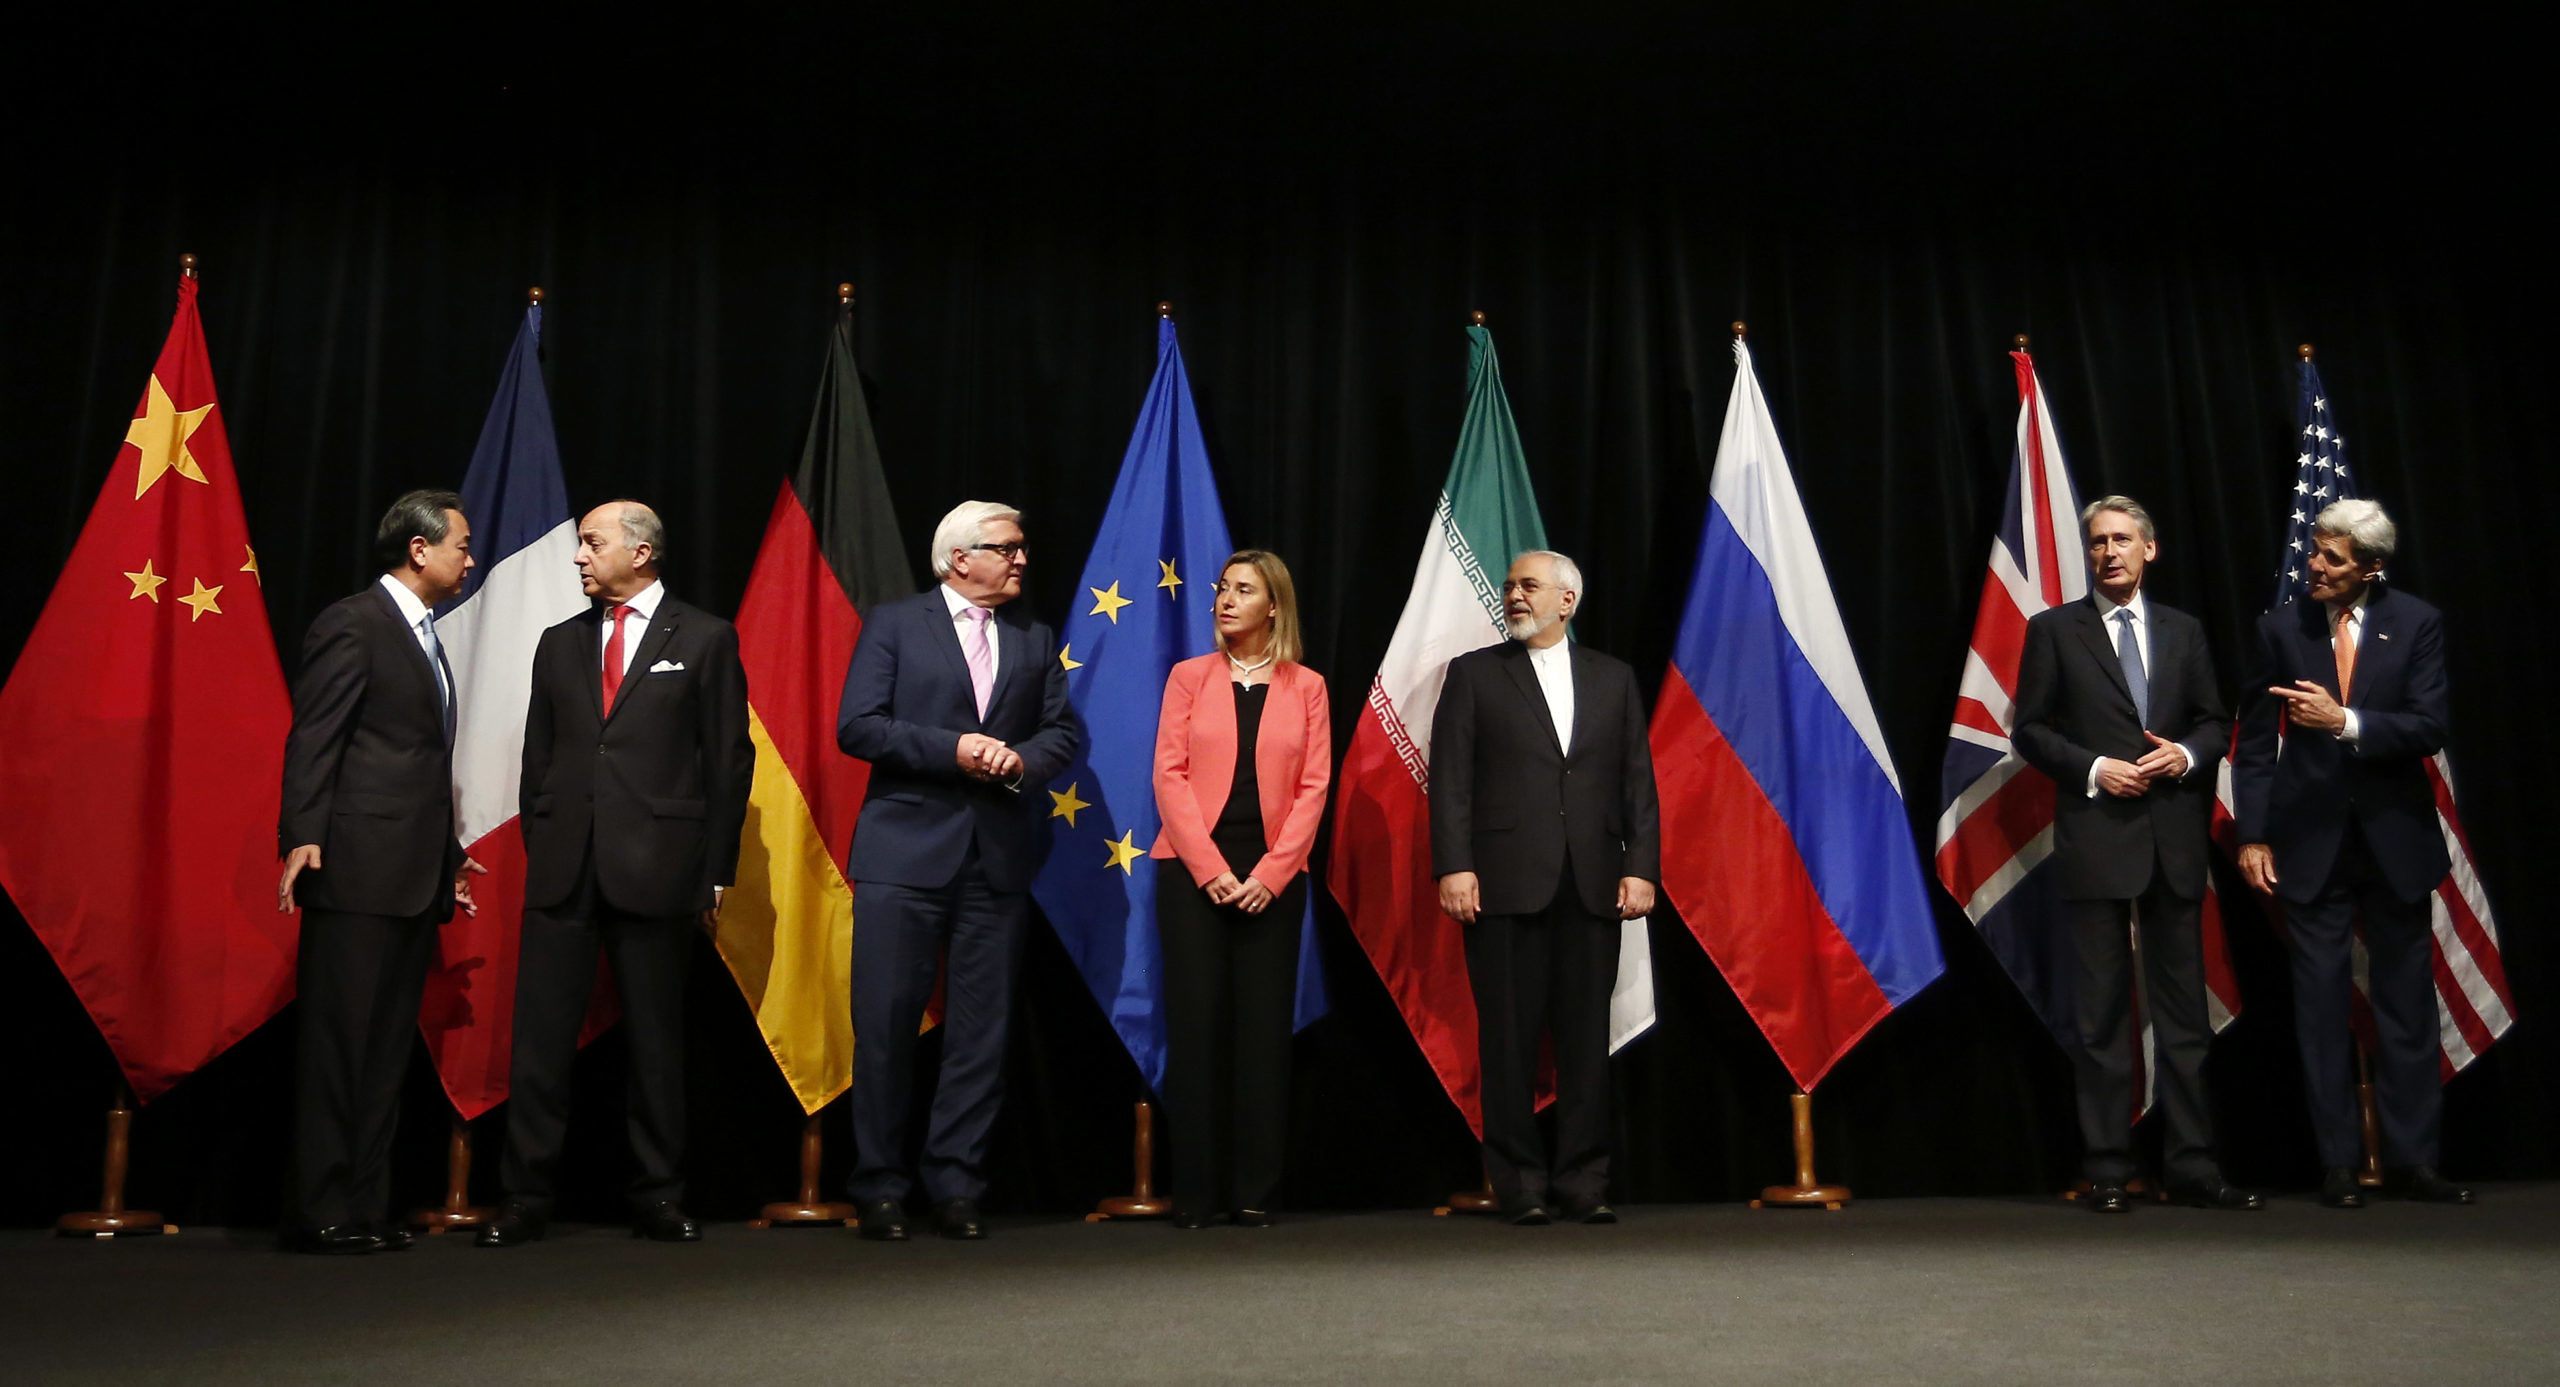 تأکید اتحادیه اروپا بر ضرورت پیگیری فوری دیپلماسی برجامی با ایران

